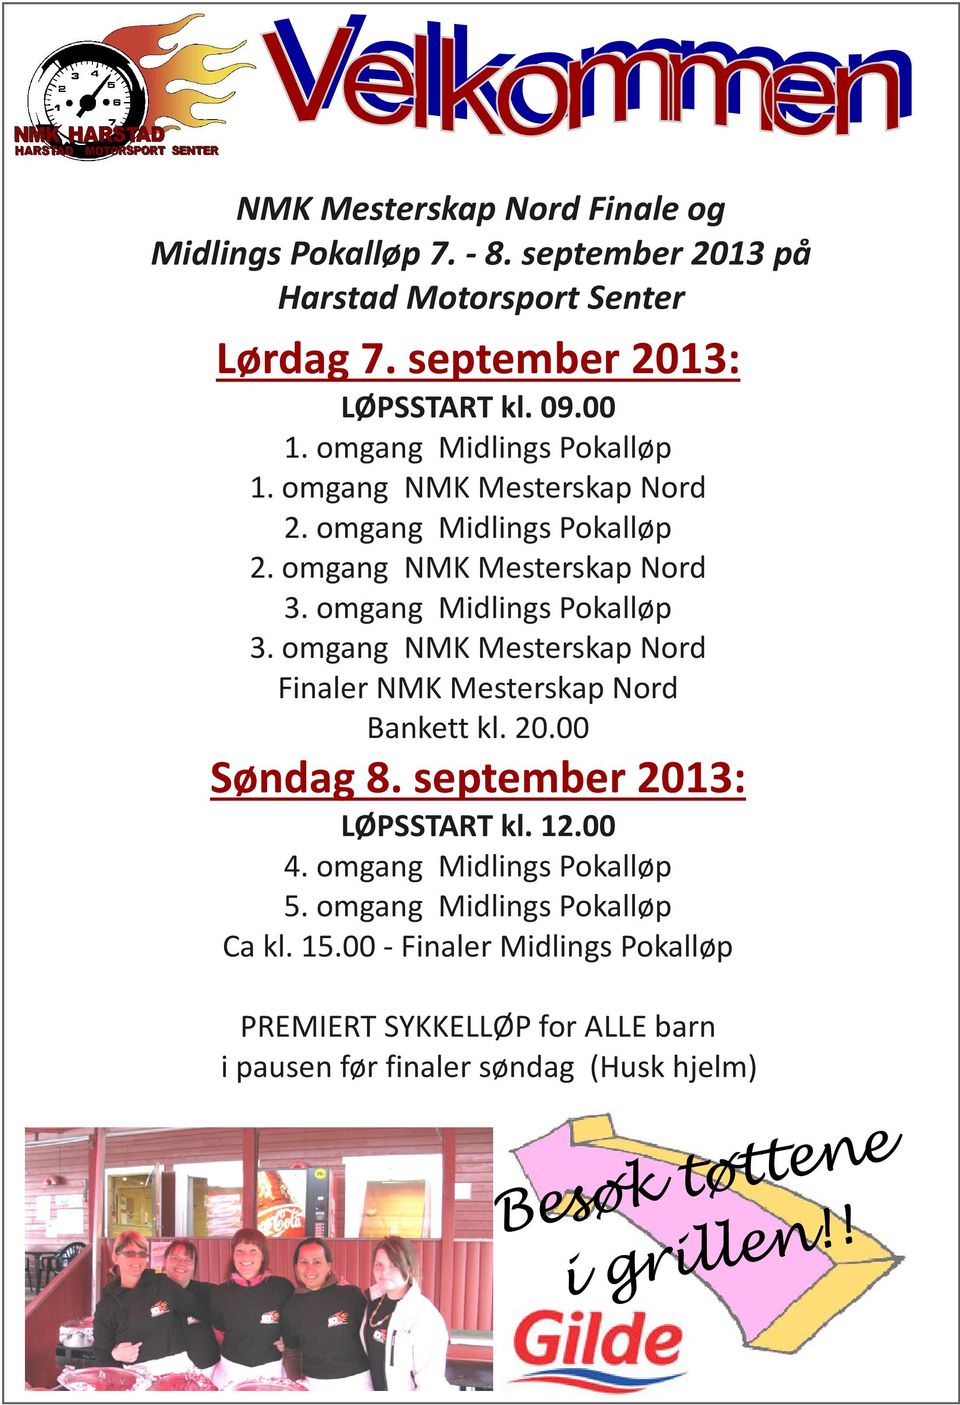 omgang NMK Mesterskap Nord Finaler NMK Mesterskap Nord Bankett kl. 20.00 Søndag 8. september 2013: LØPSSTART kl. 12.00 4. omgang Midlings Pokalløp 5.